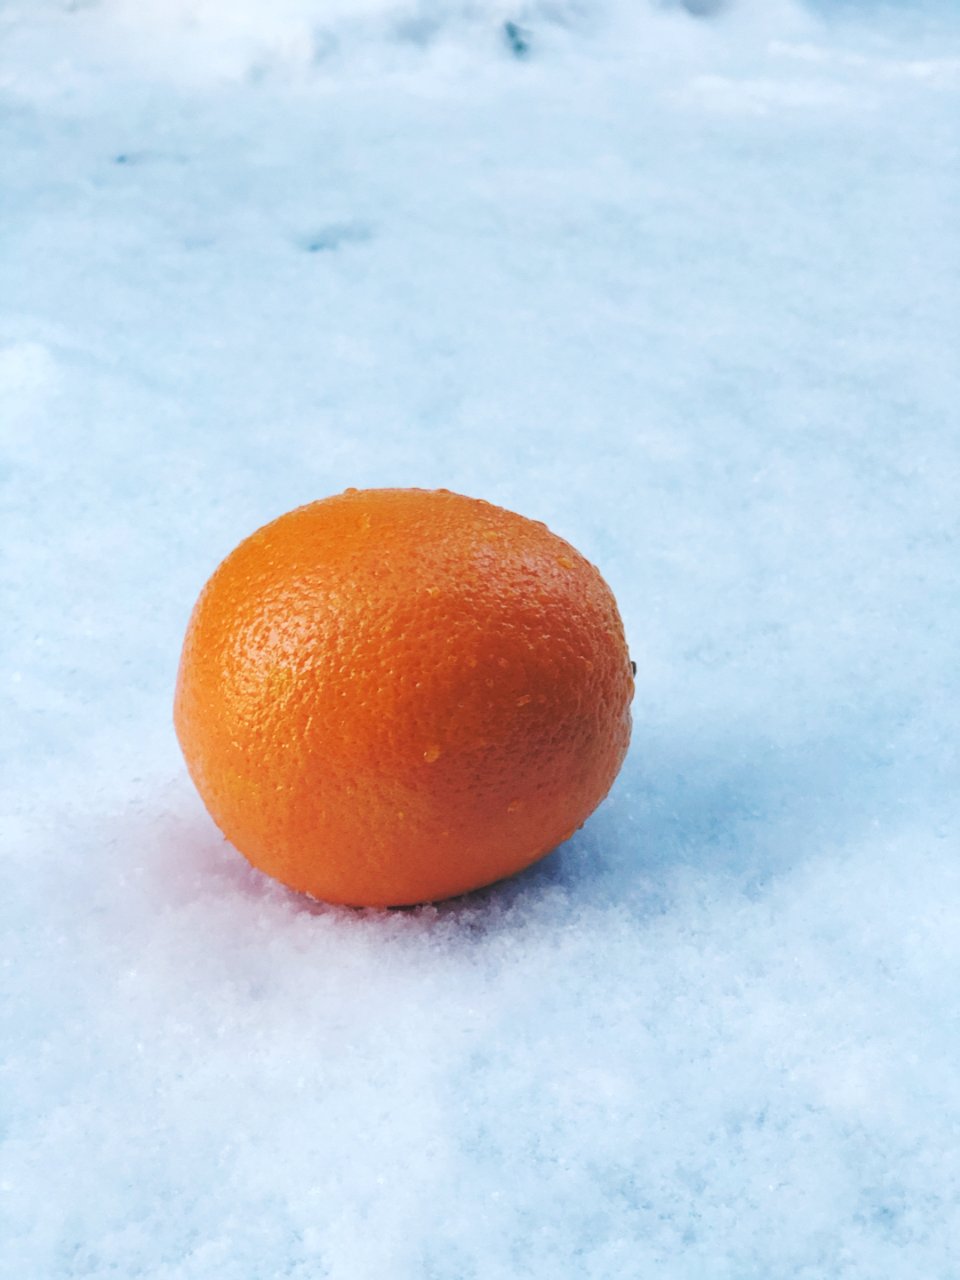 下午水果 水滴滴的大橙子🍊...